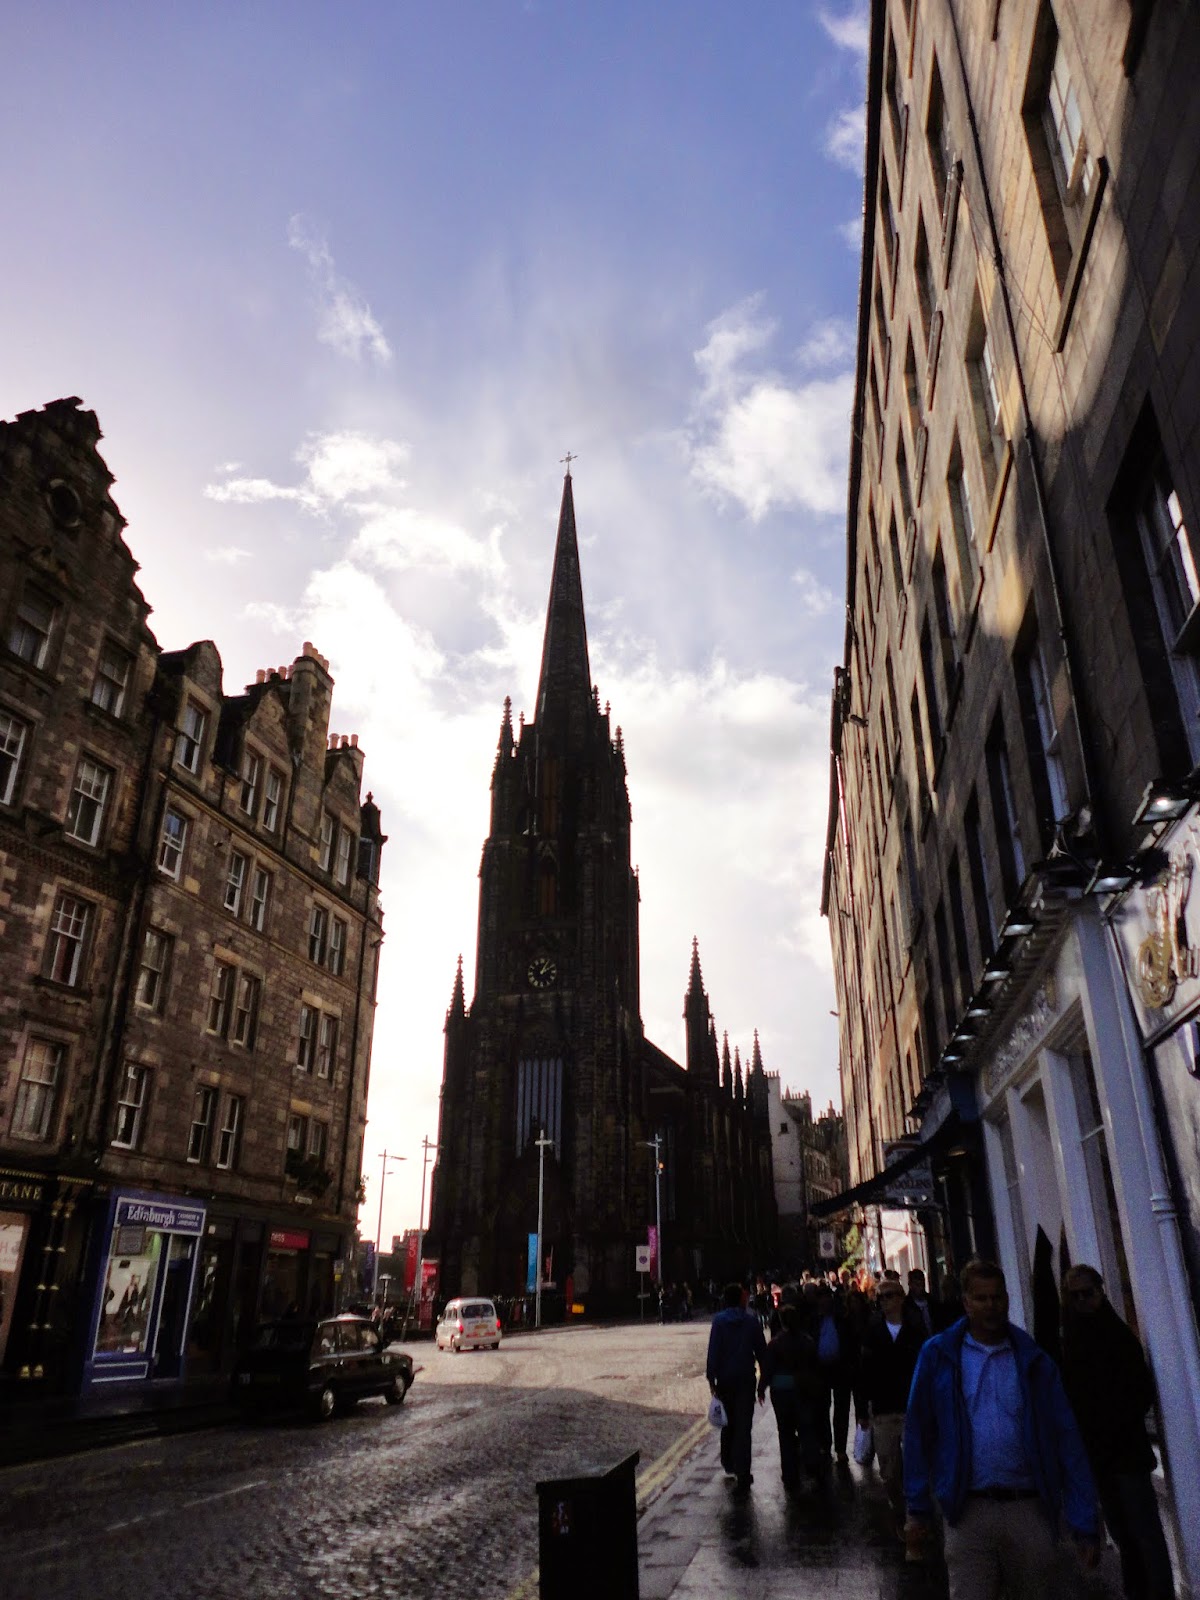 Edinburgh Royal Mile: The Hub